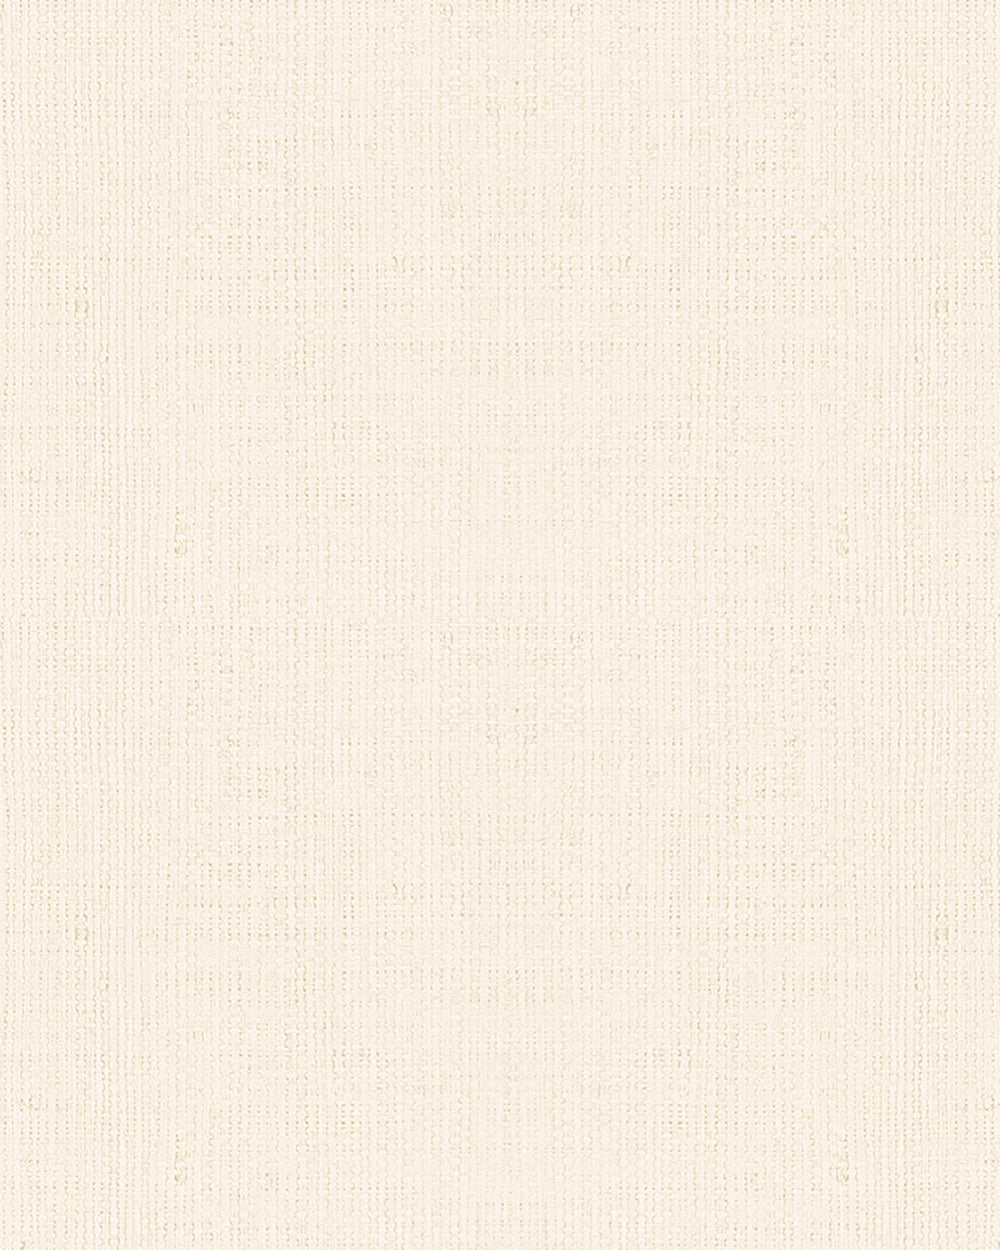 Casual - Textured Rattan Plains plain wallpaper Marburg Roll Cream  30459